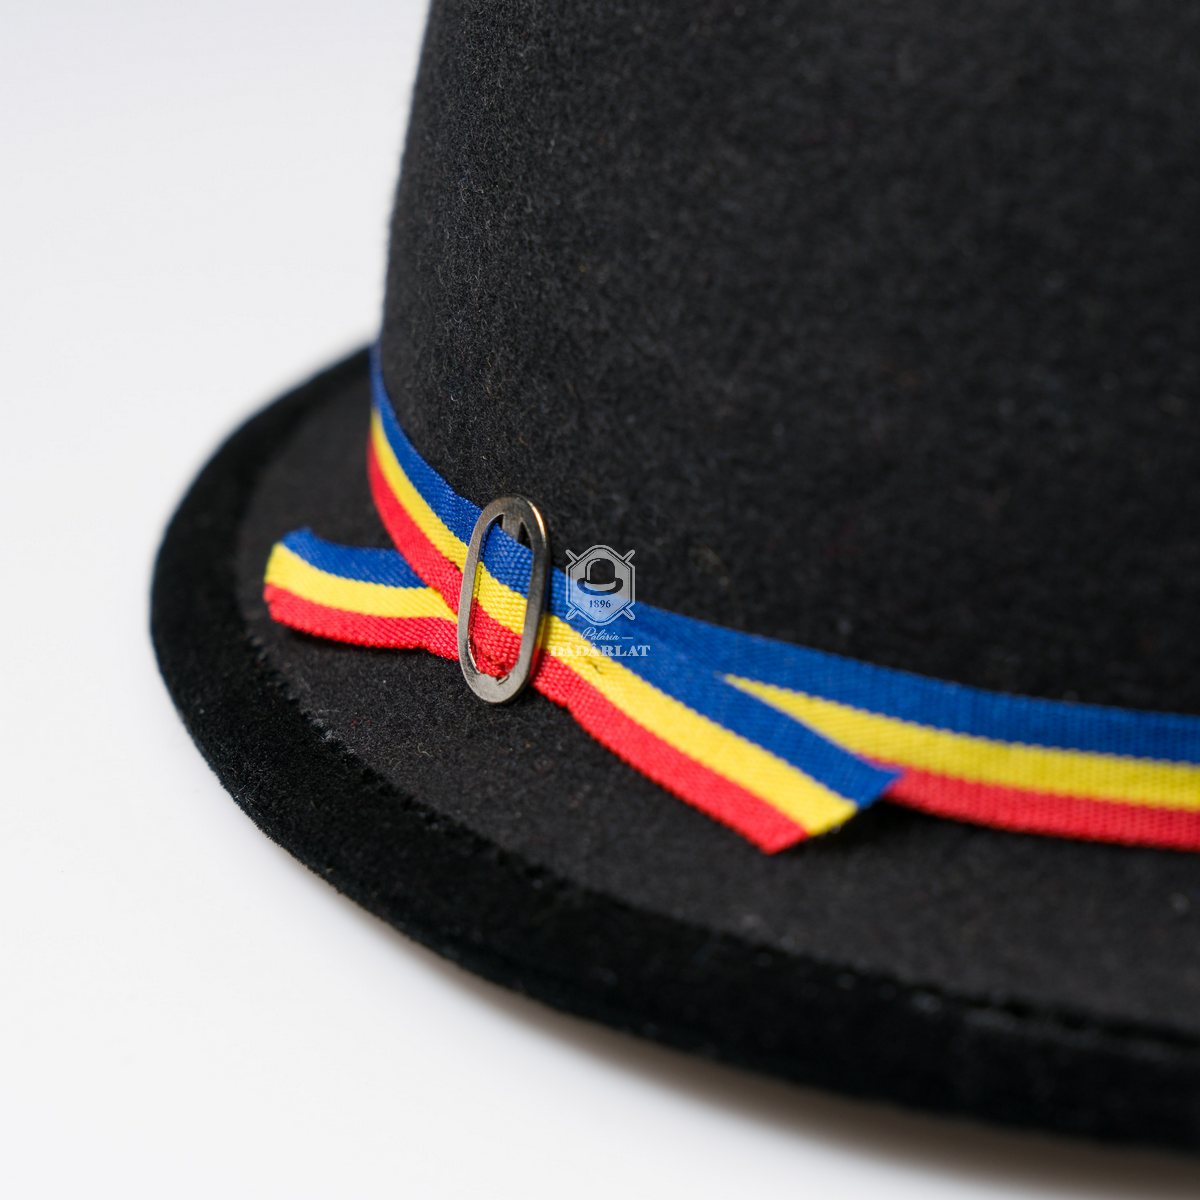 Thirty Misery Resident Pălărie Tradițională Cu Tricolor Dadarlat - Pălăria Dădârlat